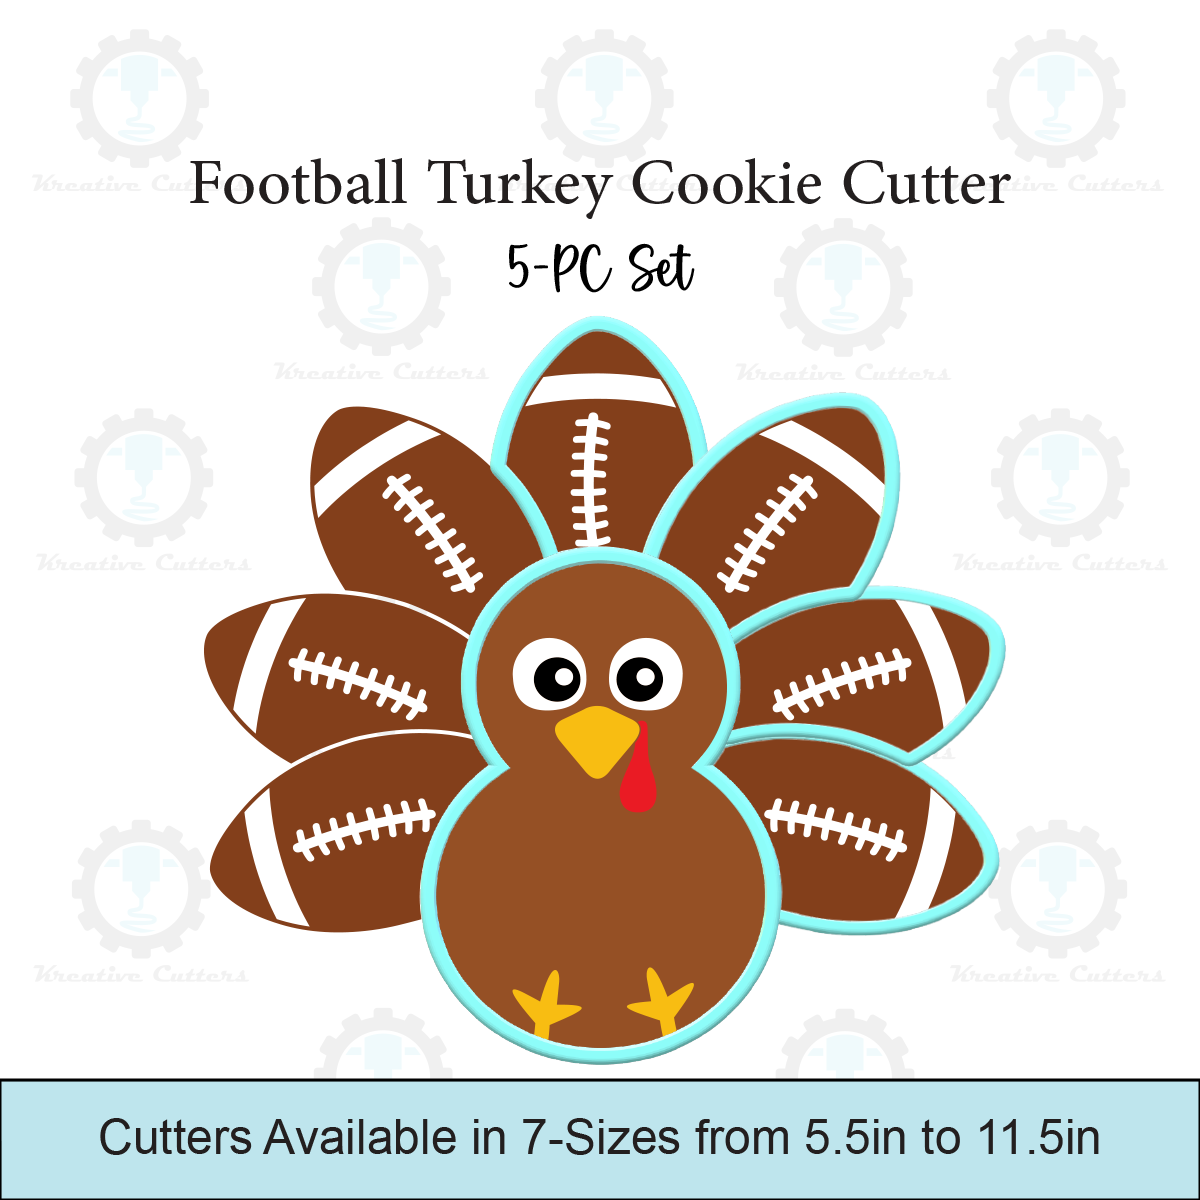 Football Turkey Cookie Cutter Platter 5-PC Set